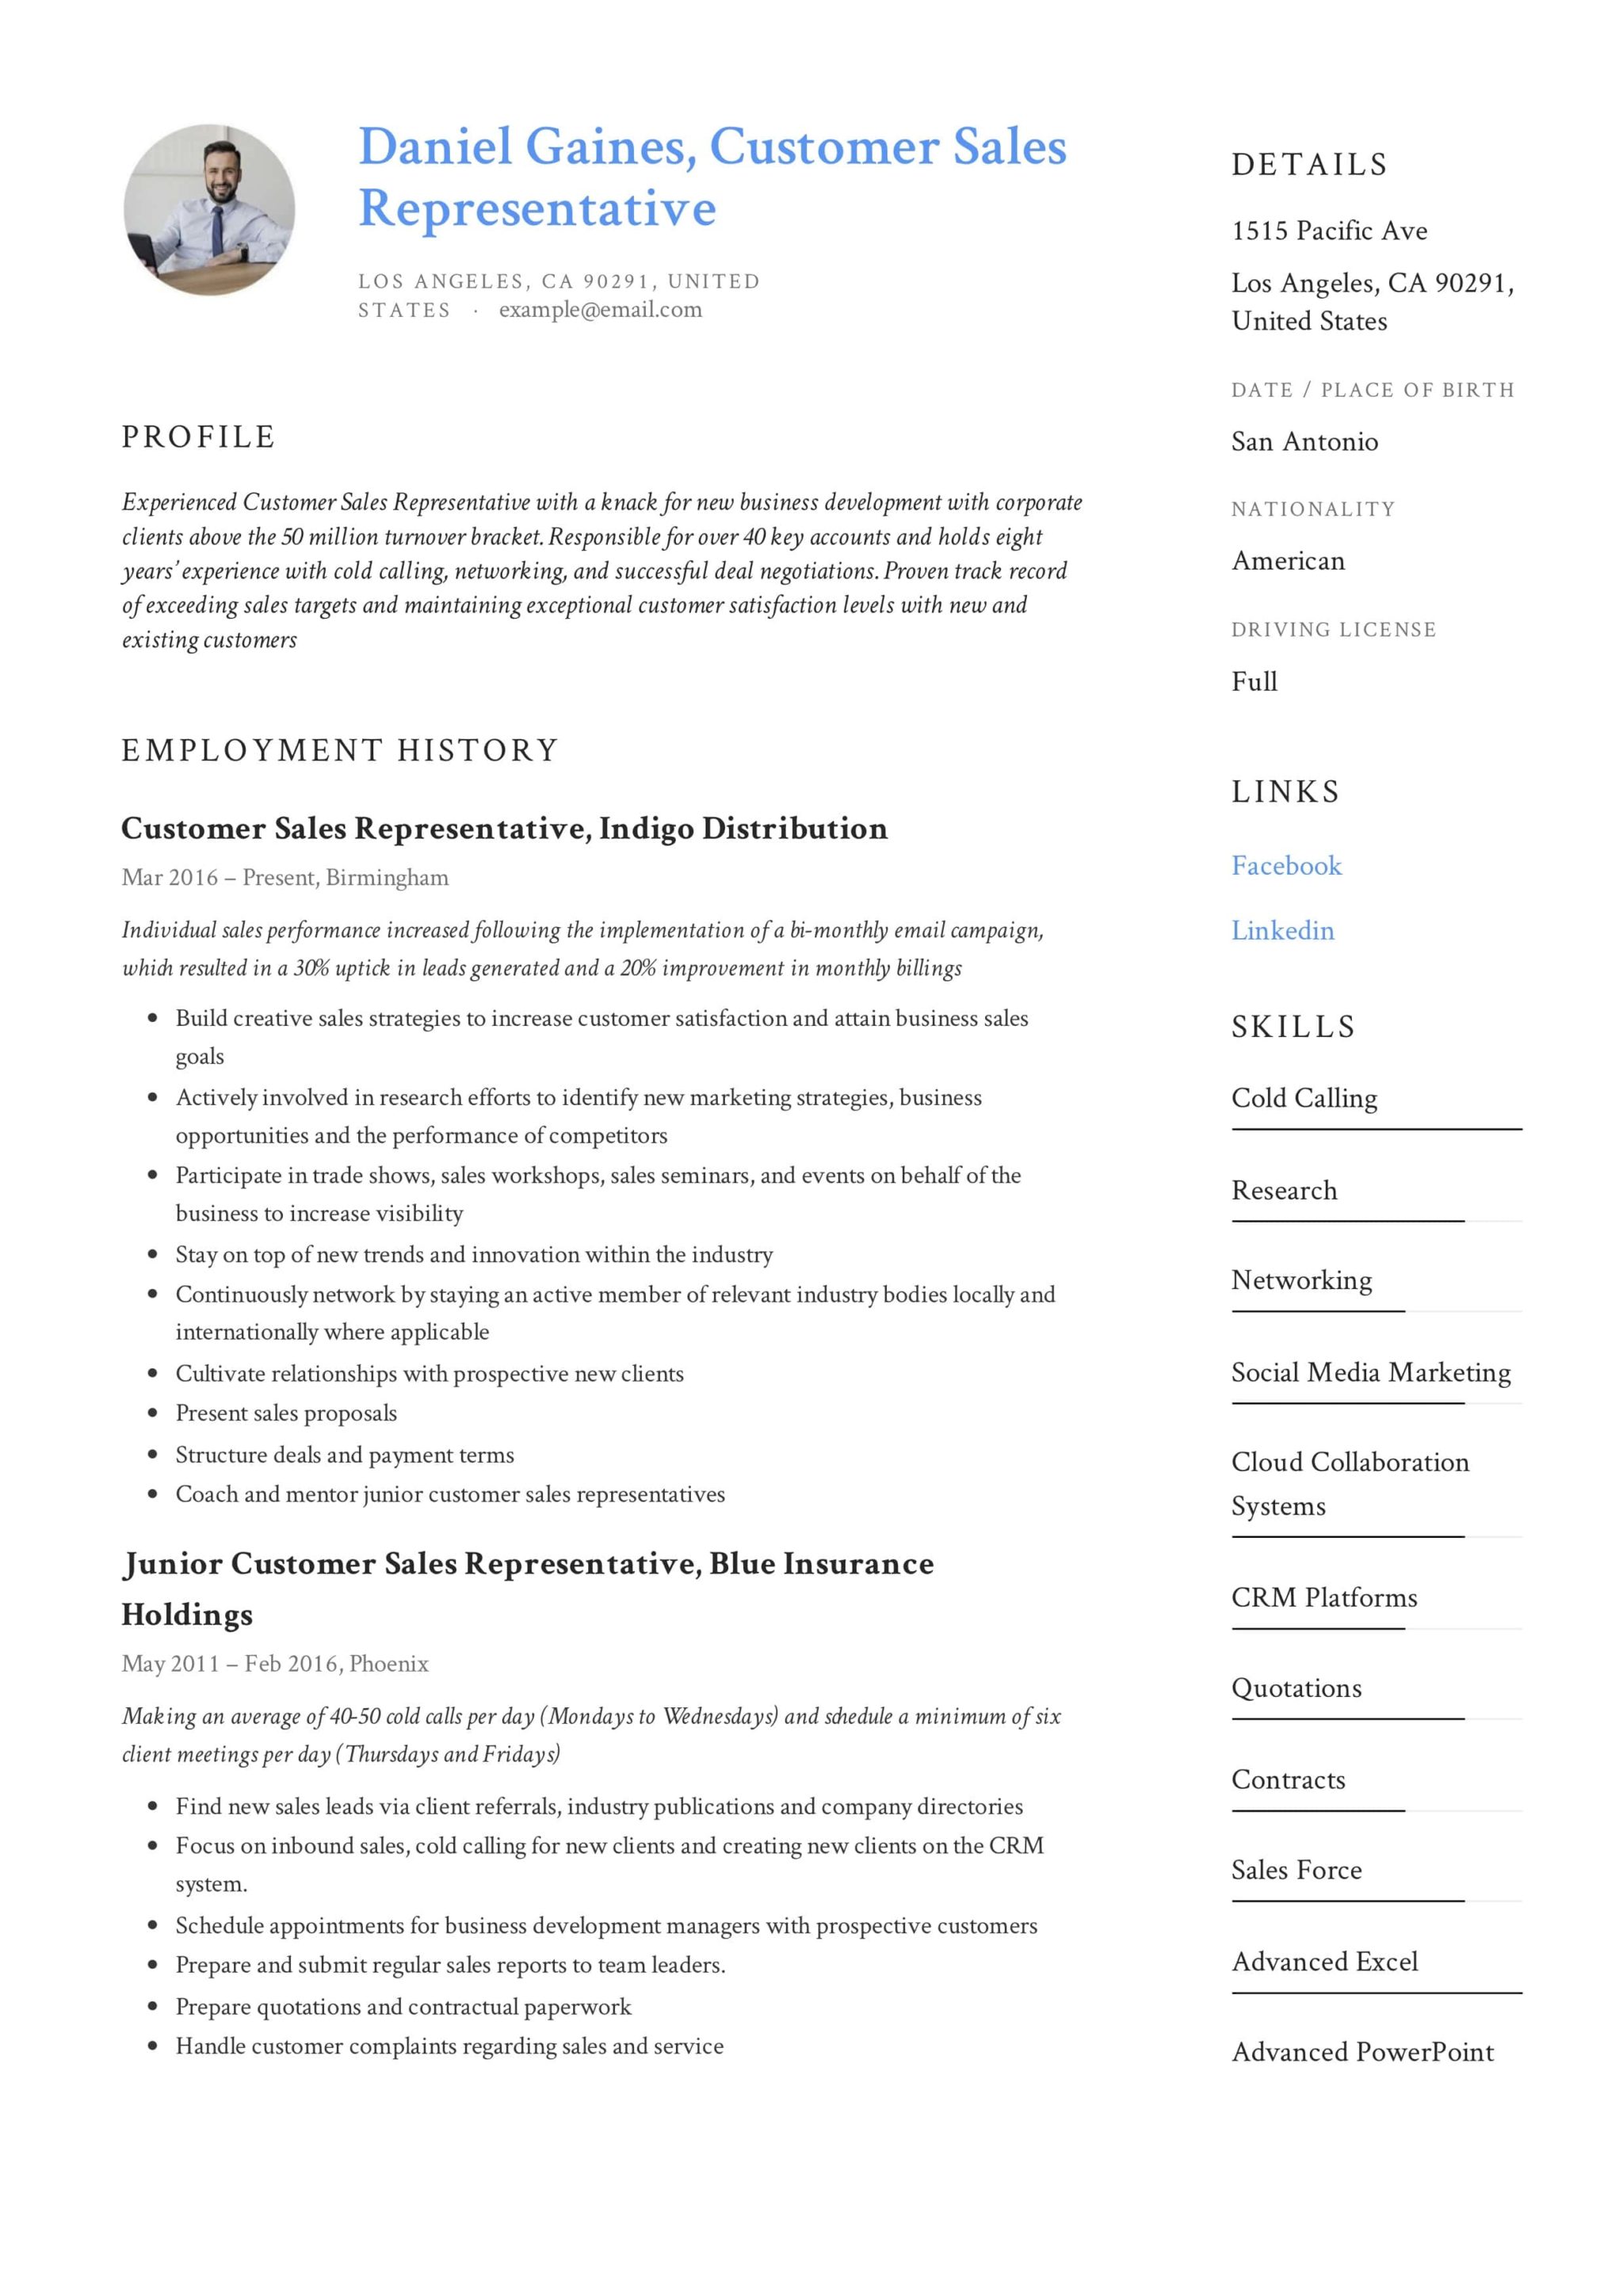 Guide Customer Sales Representative Resume +12 Samples PDF 2019